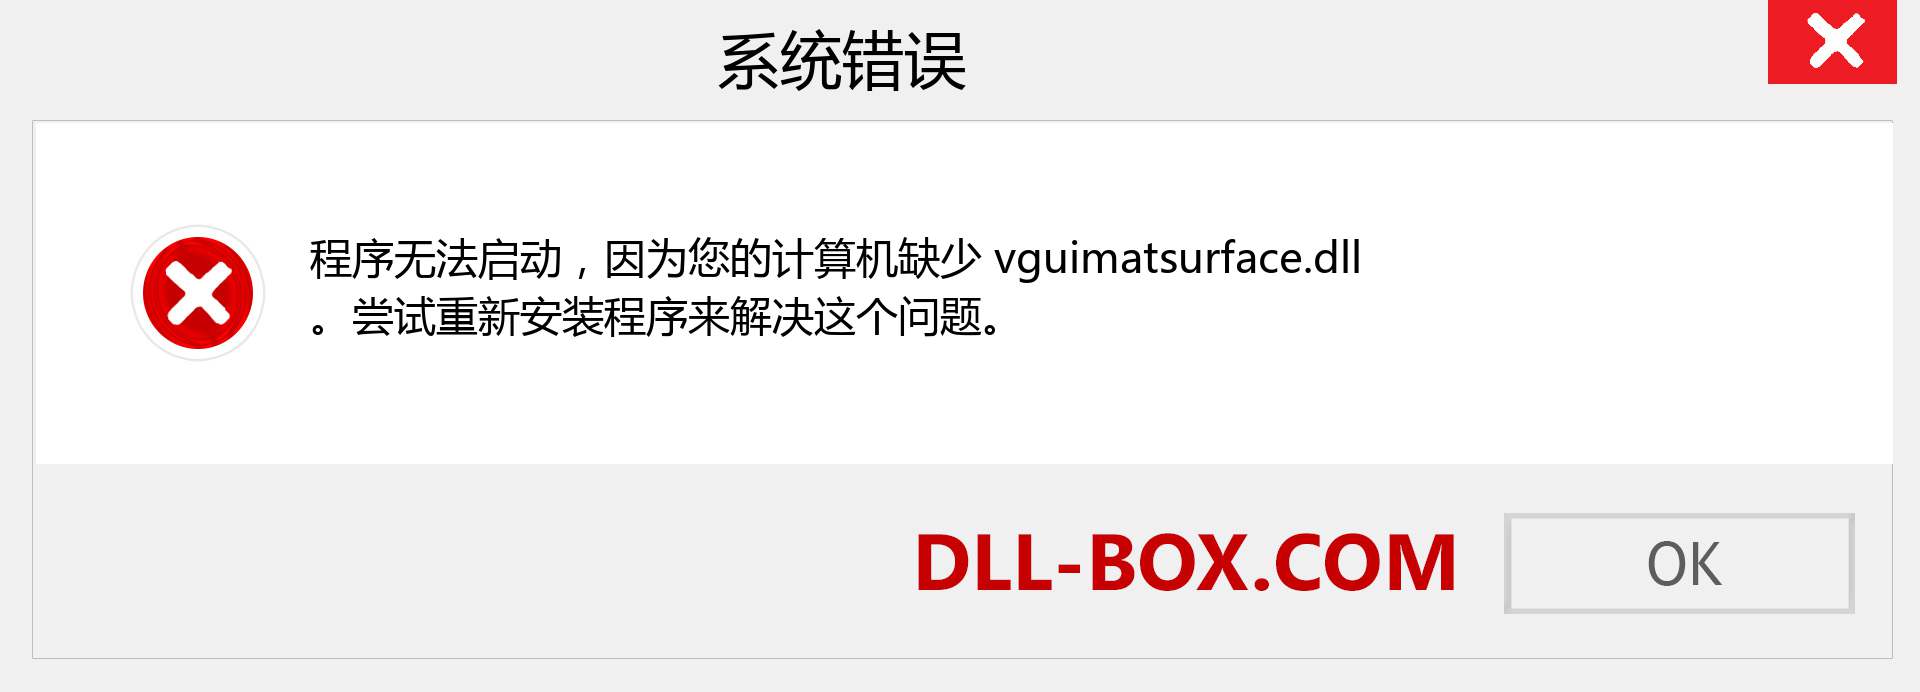 vguimatsurface.dll 文件丢失？。 适用于 Windows 7、8、10 的下载 - 修复 Windows、照片、图像上的 vguimatsurface dll 丢失错误